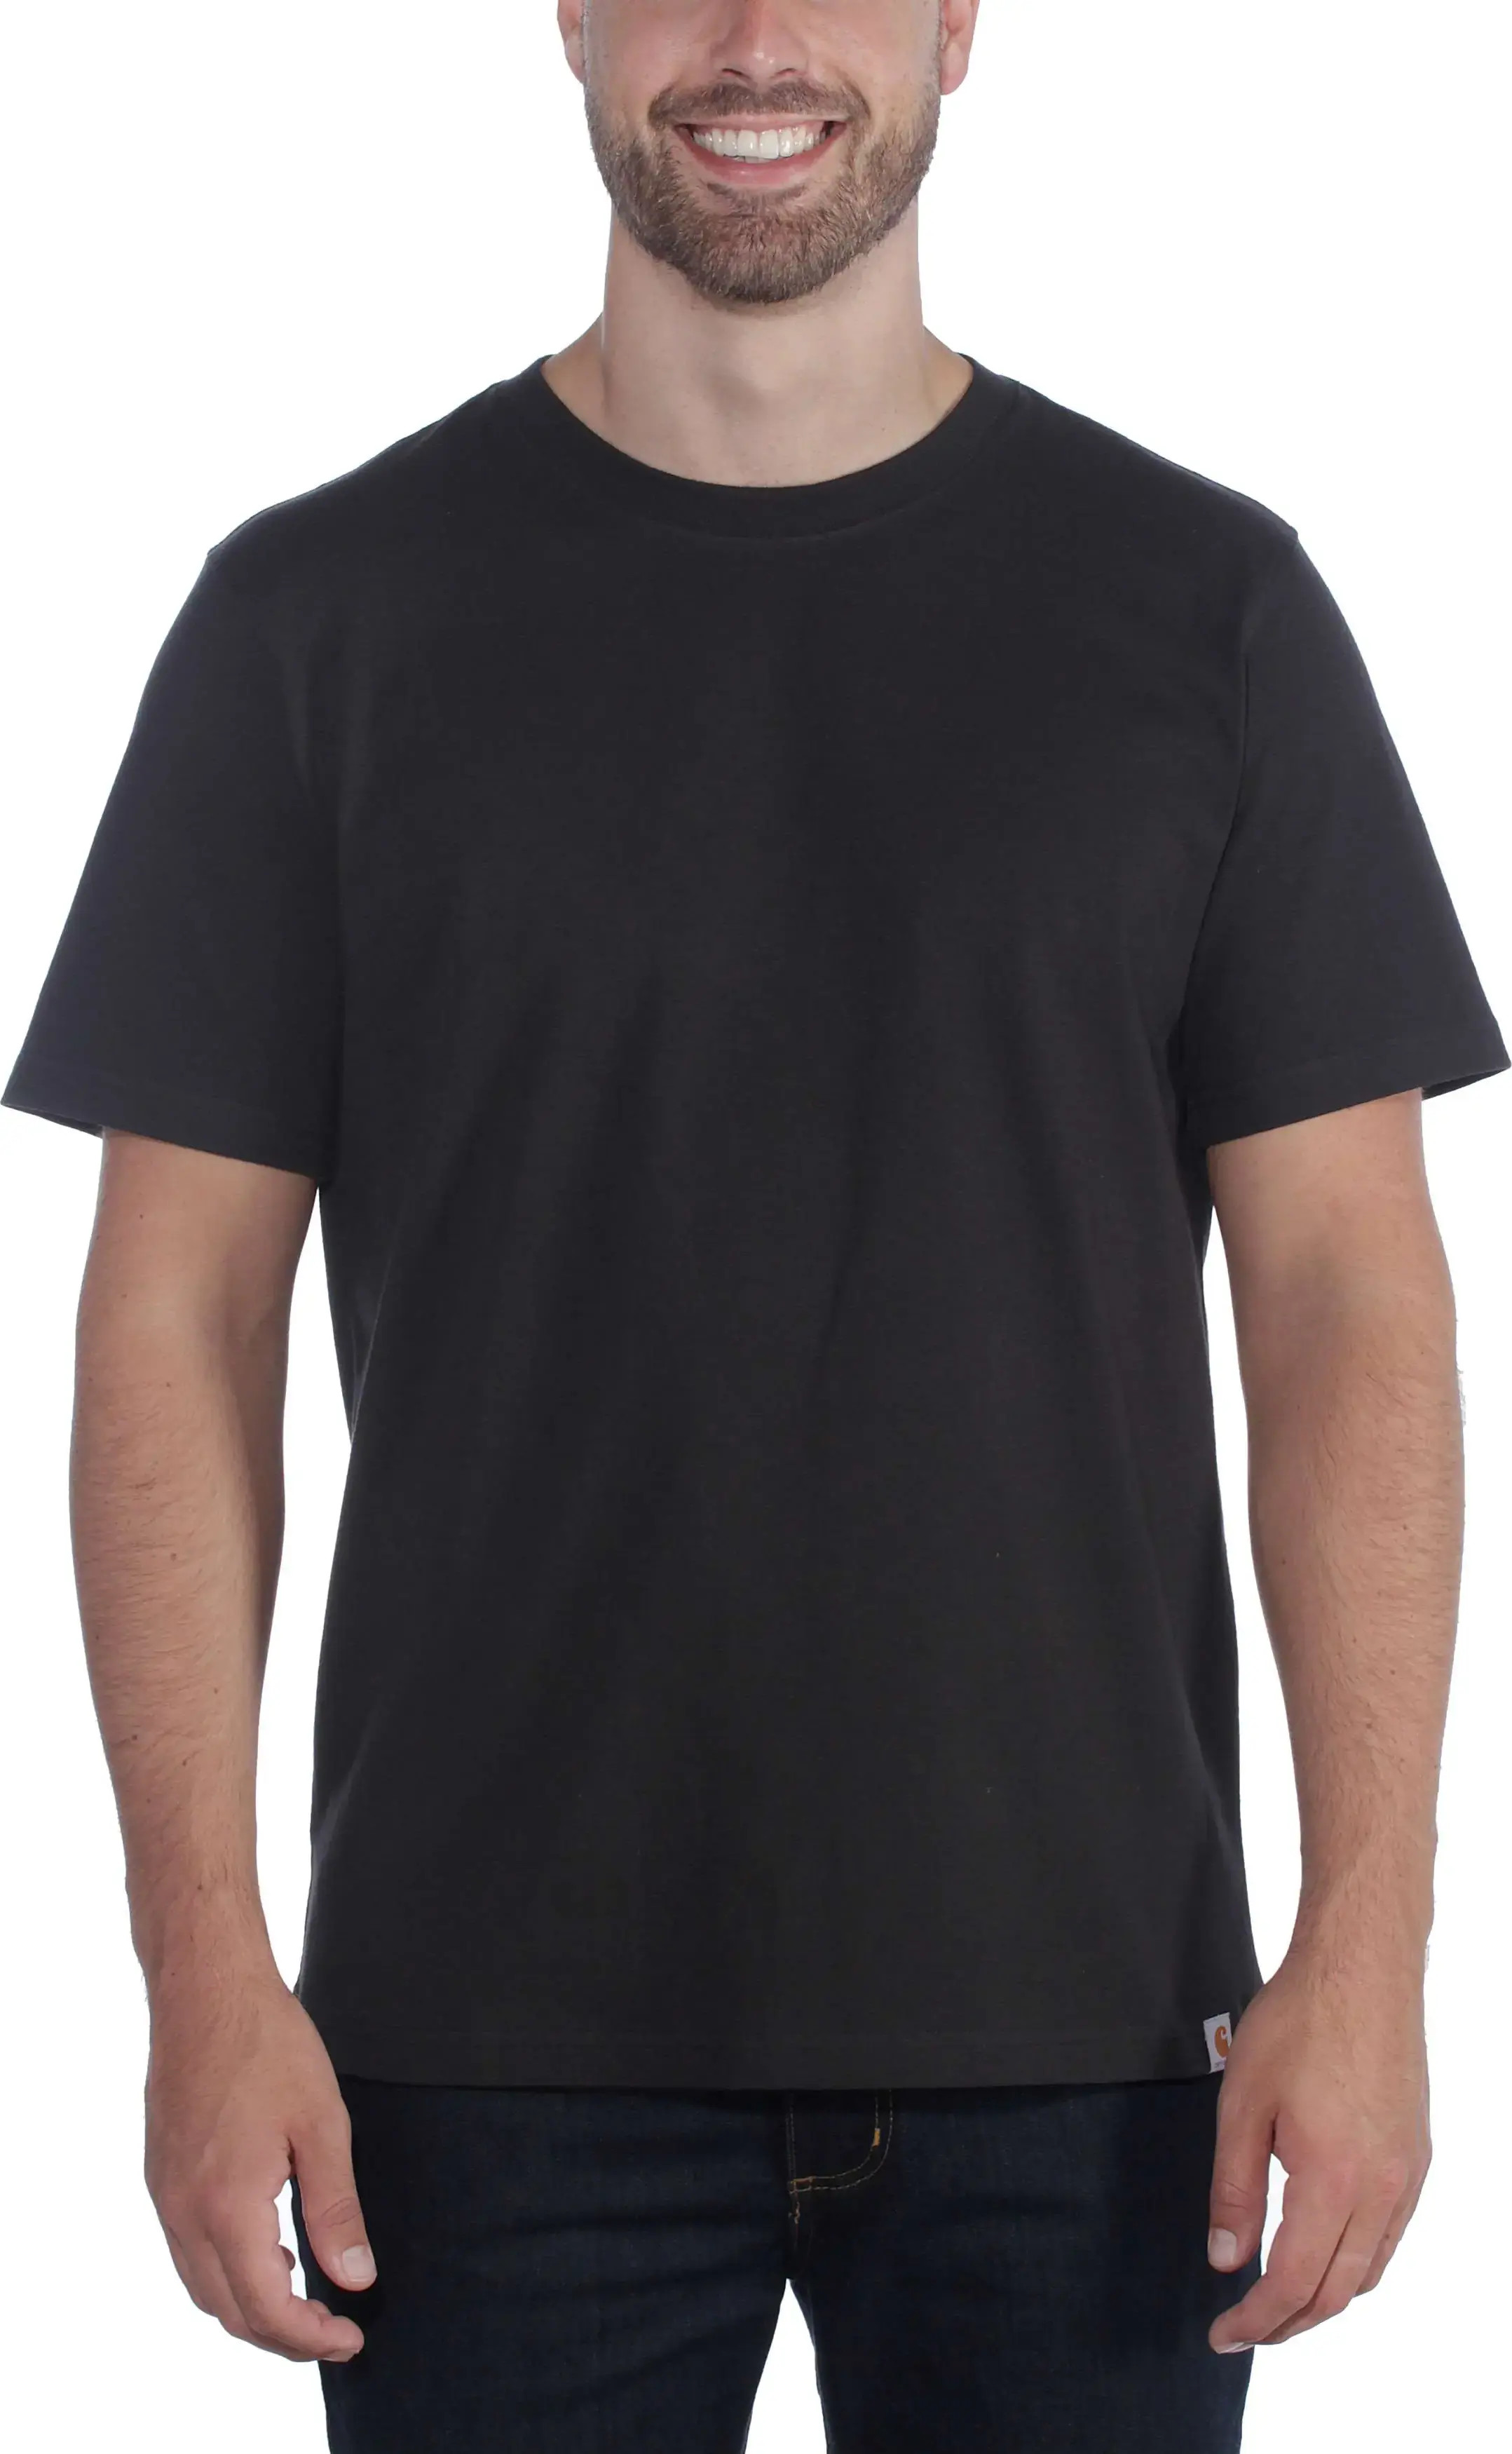 Men's Relaxed Fit Heavyweight Short Sleeve T-Shirt Black